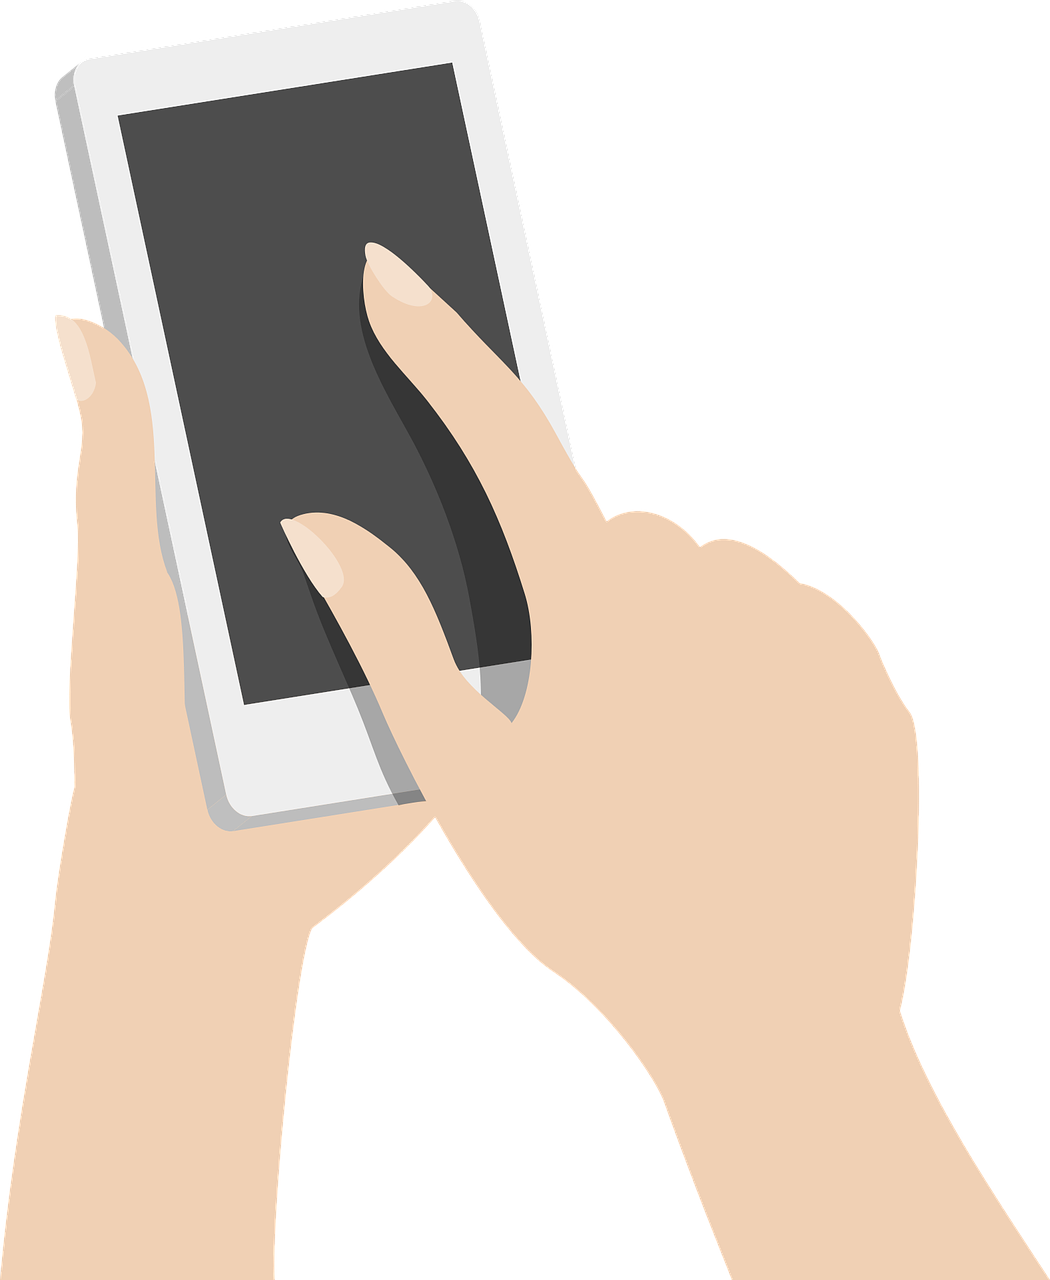 Нажатие пальцем на экран. Телефон в руке. Смартфон в руке. Векторные смартфоны с рукой. Нарисованная рука с телефоном.